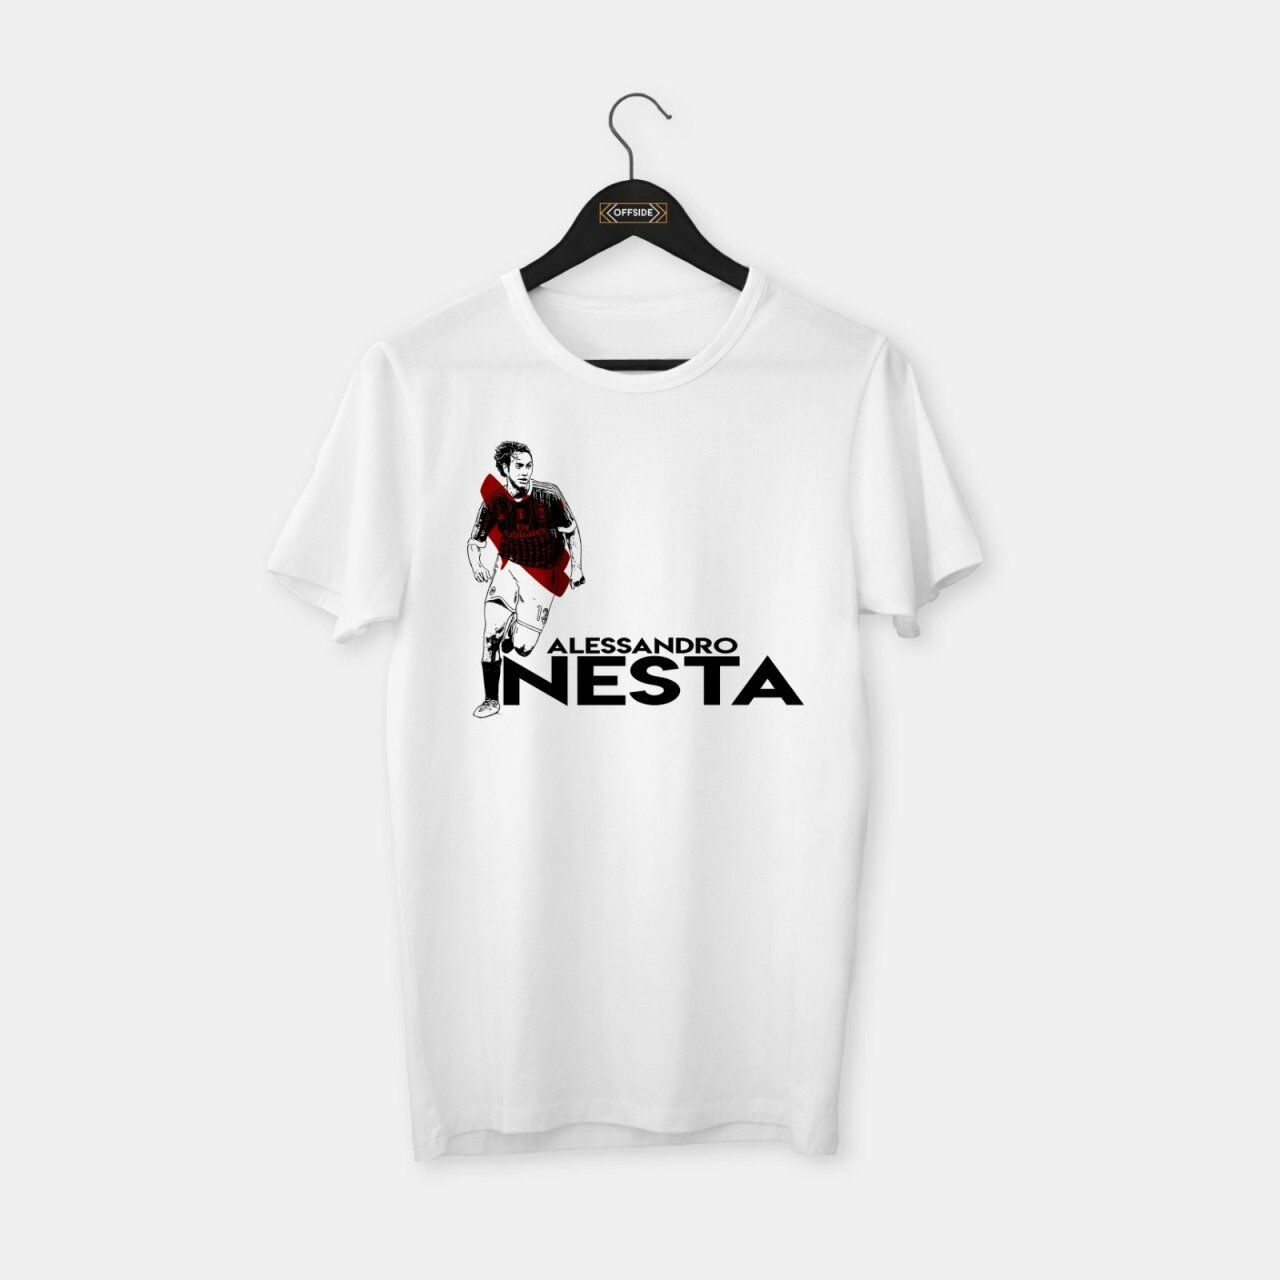 Nesta T-shirt